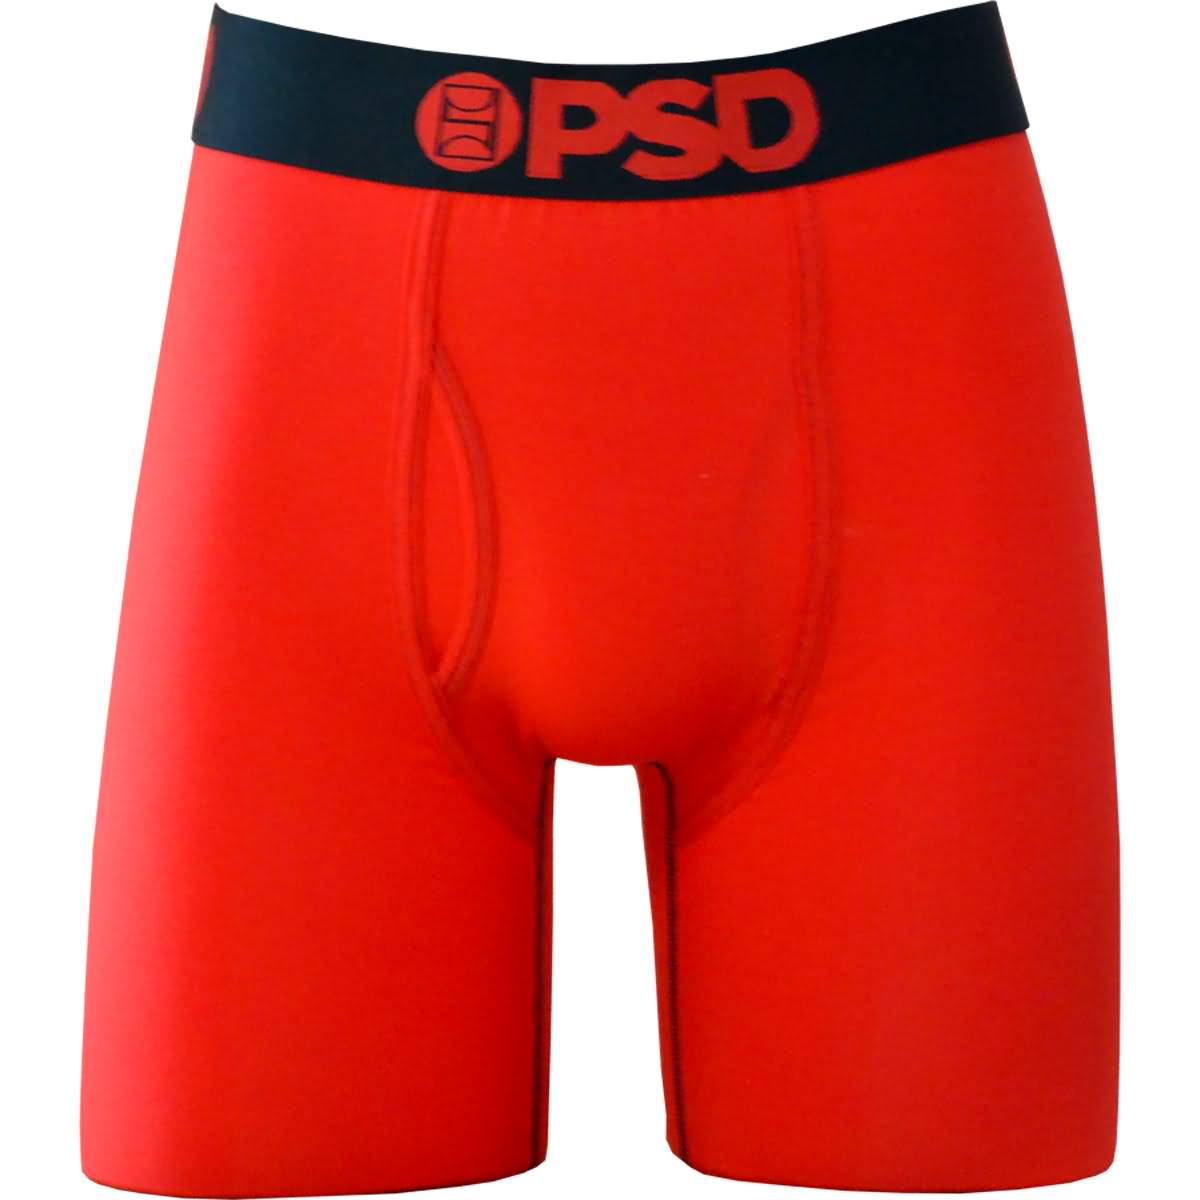 https://motorhelmets.com/cdn/shop/products/apparel-psd-casual-underwear-mens-boxers-modal-red.jpg?v=1691989965